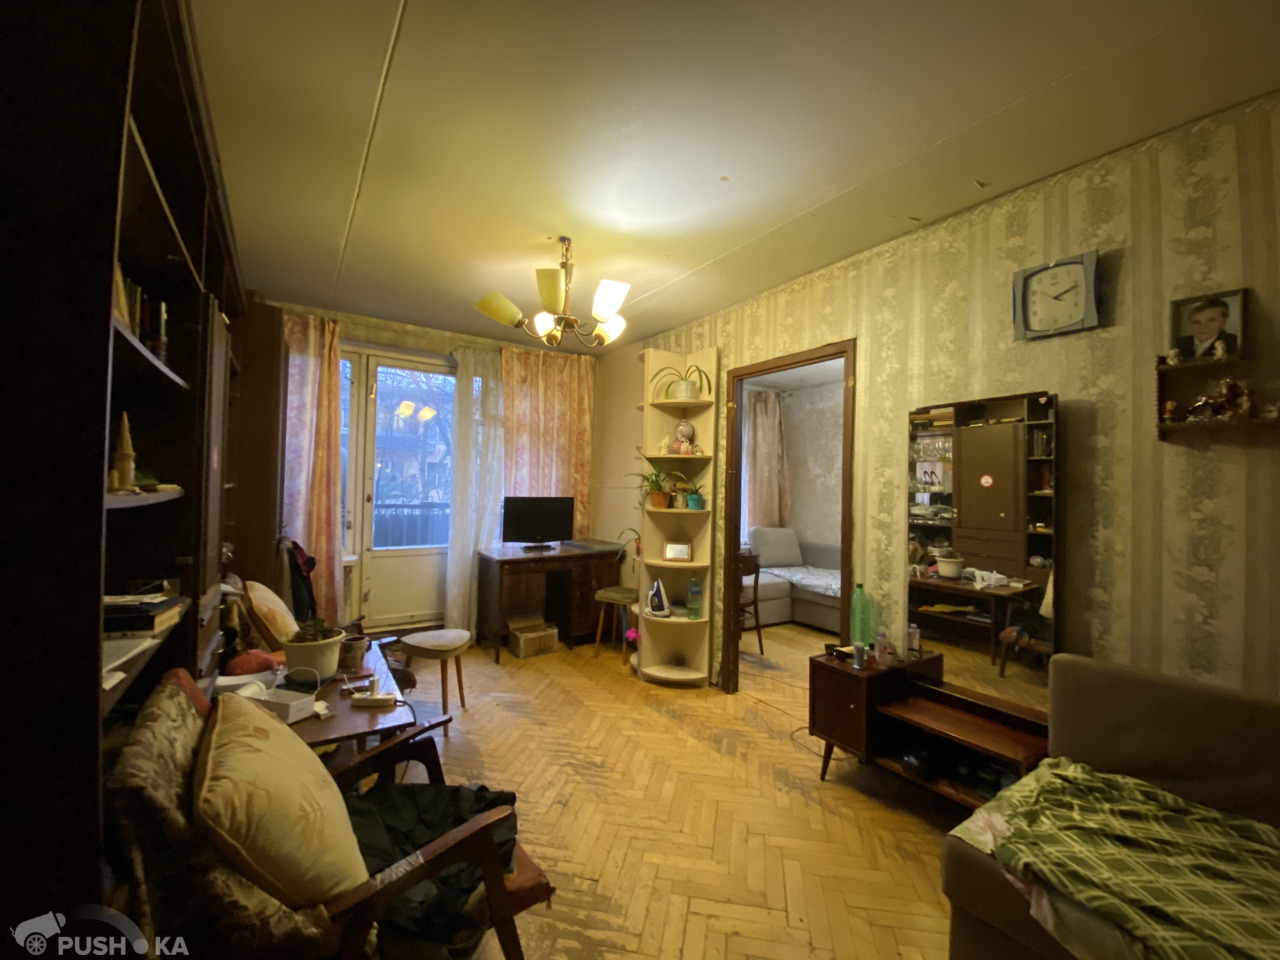 Купить трёхкомнатную квартиру г Москва, ул Сторожевая, д 30 к 2 - PUSH-KA.RU, объявление №255237